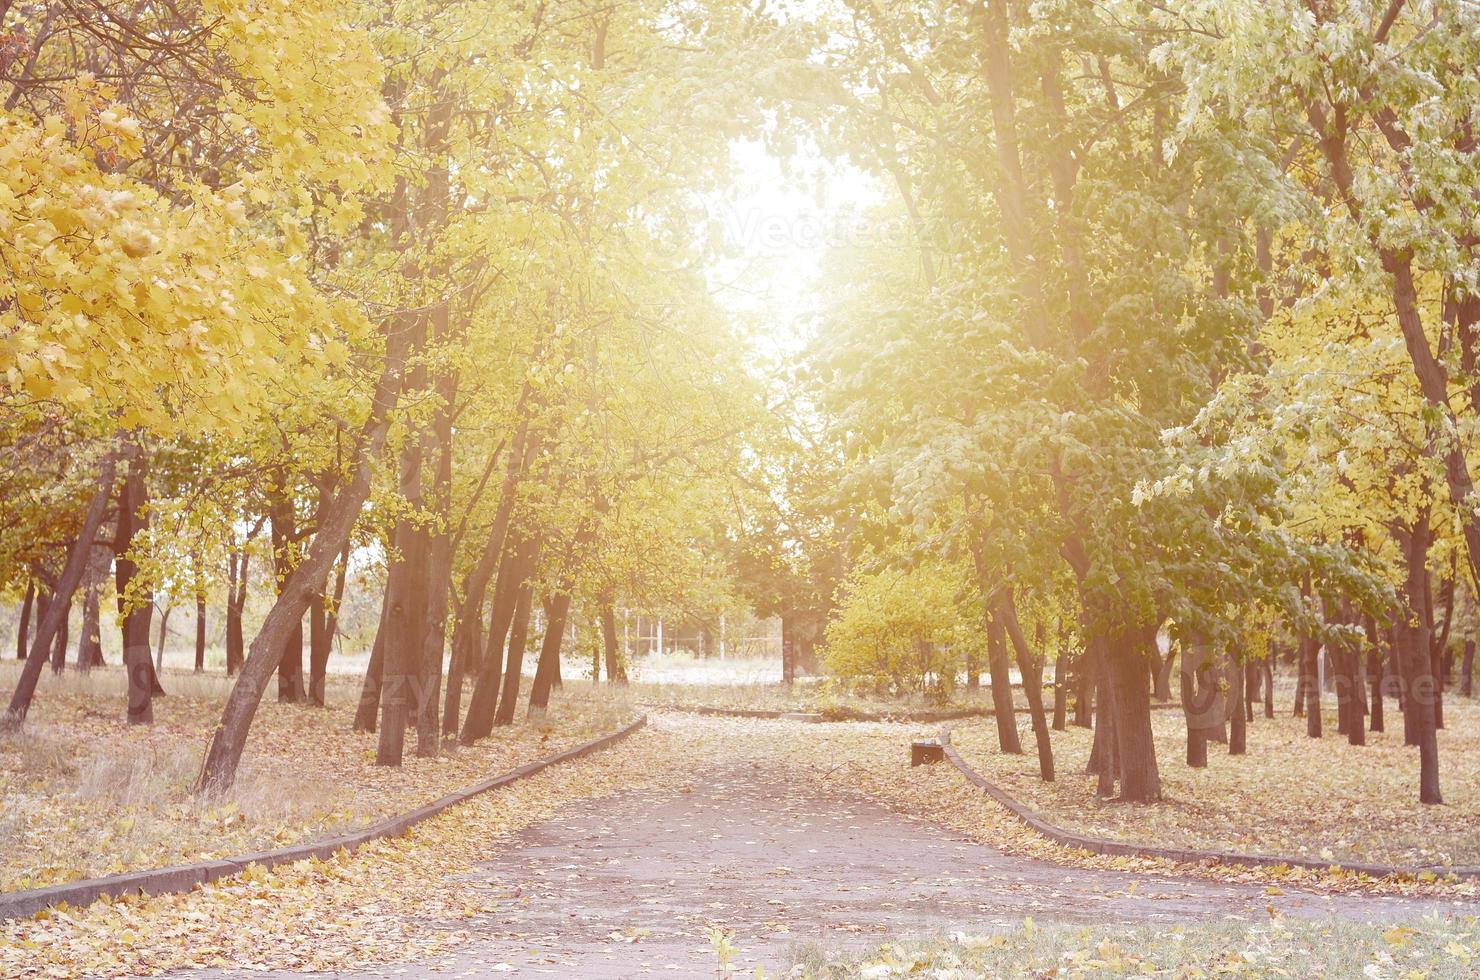 paisaje nocturno con árboles amarillentos y muchas hojas caídas en la carretera del parque foto